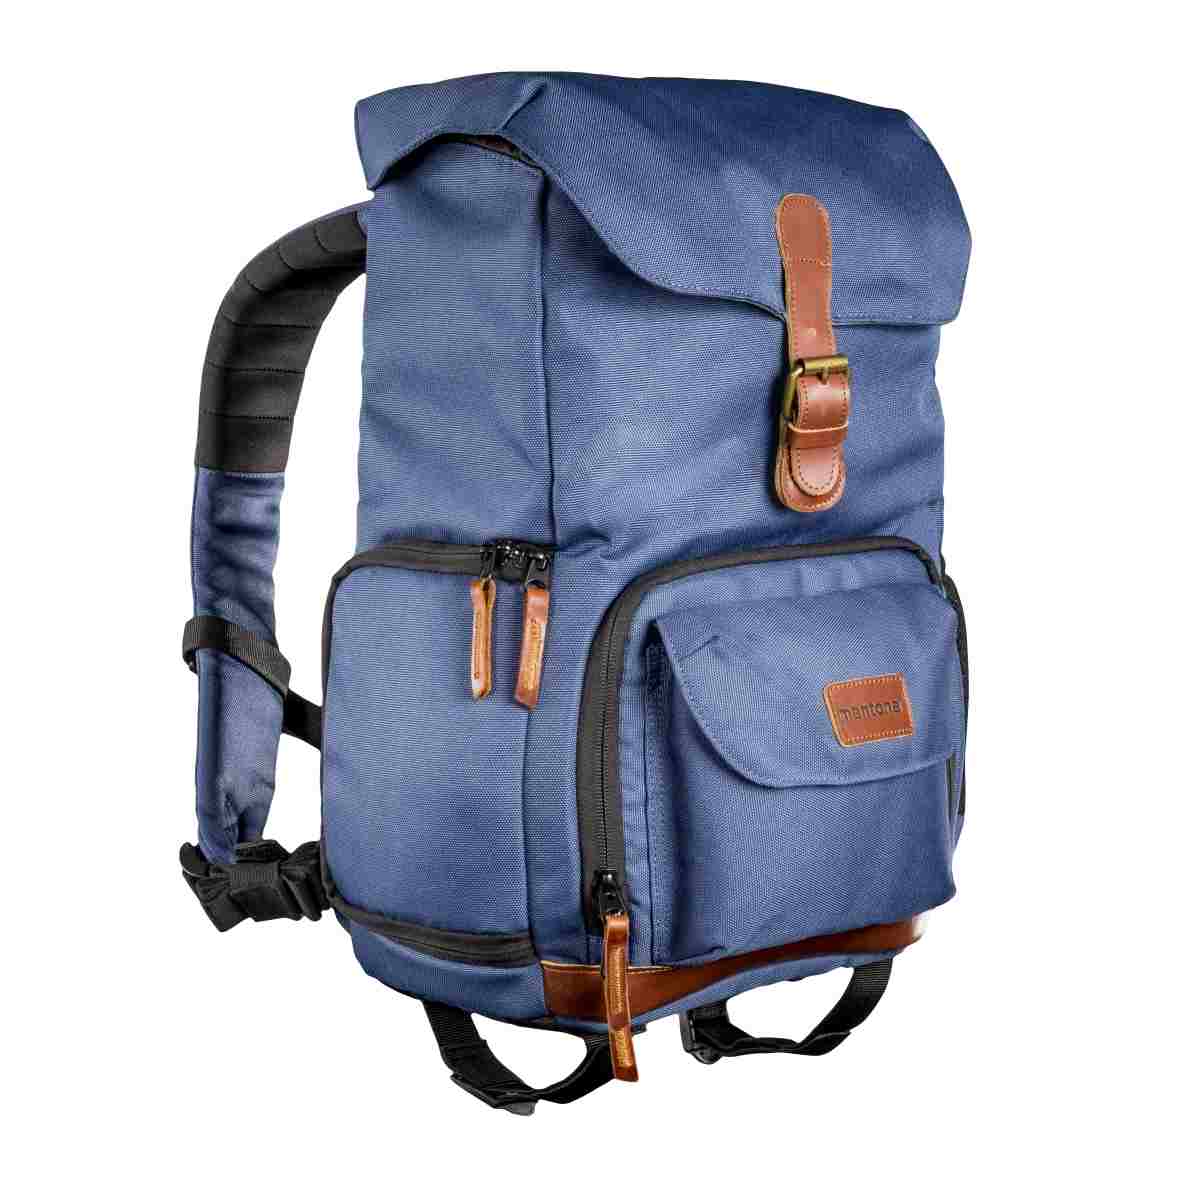 Mantona photo backpack Luis junior blue, retro